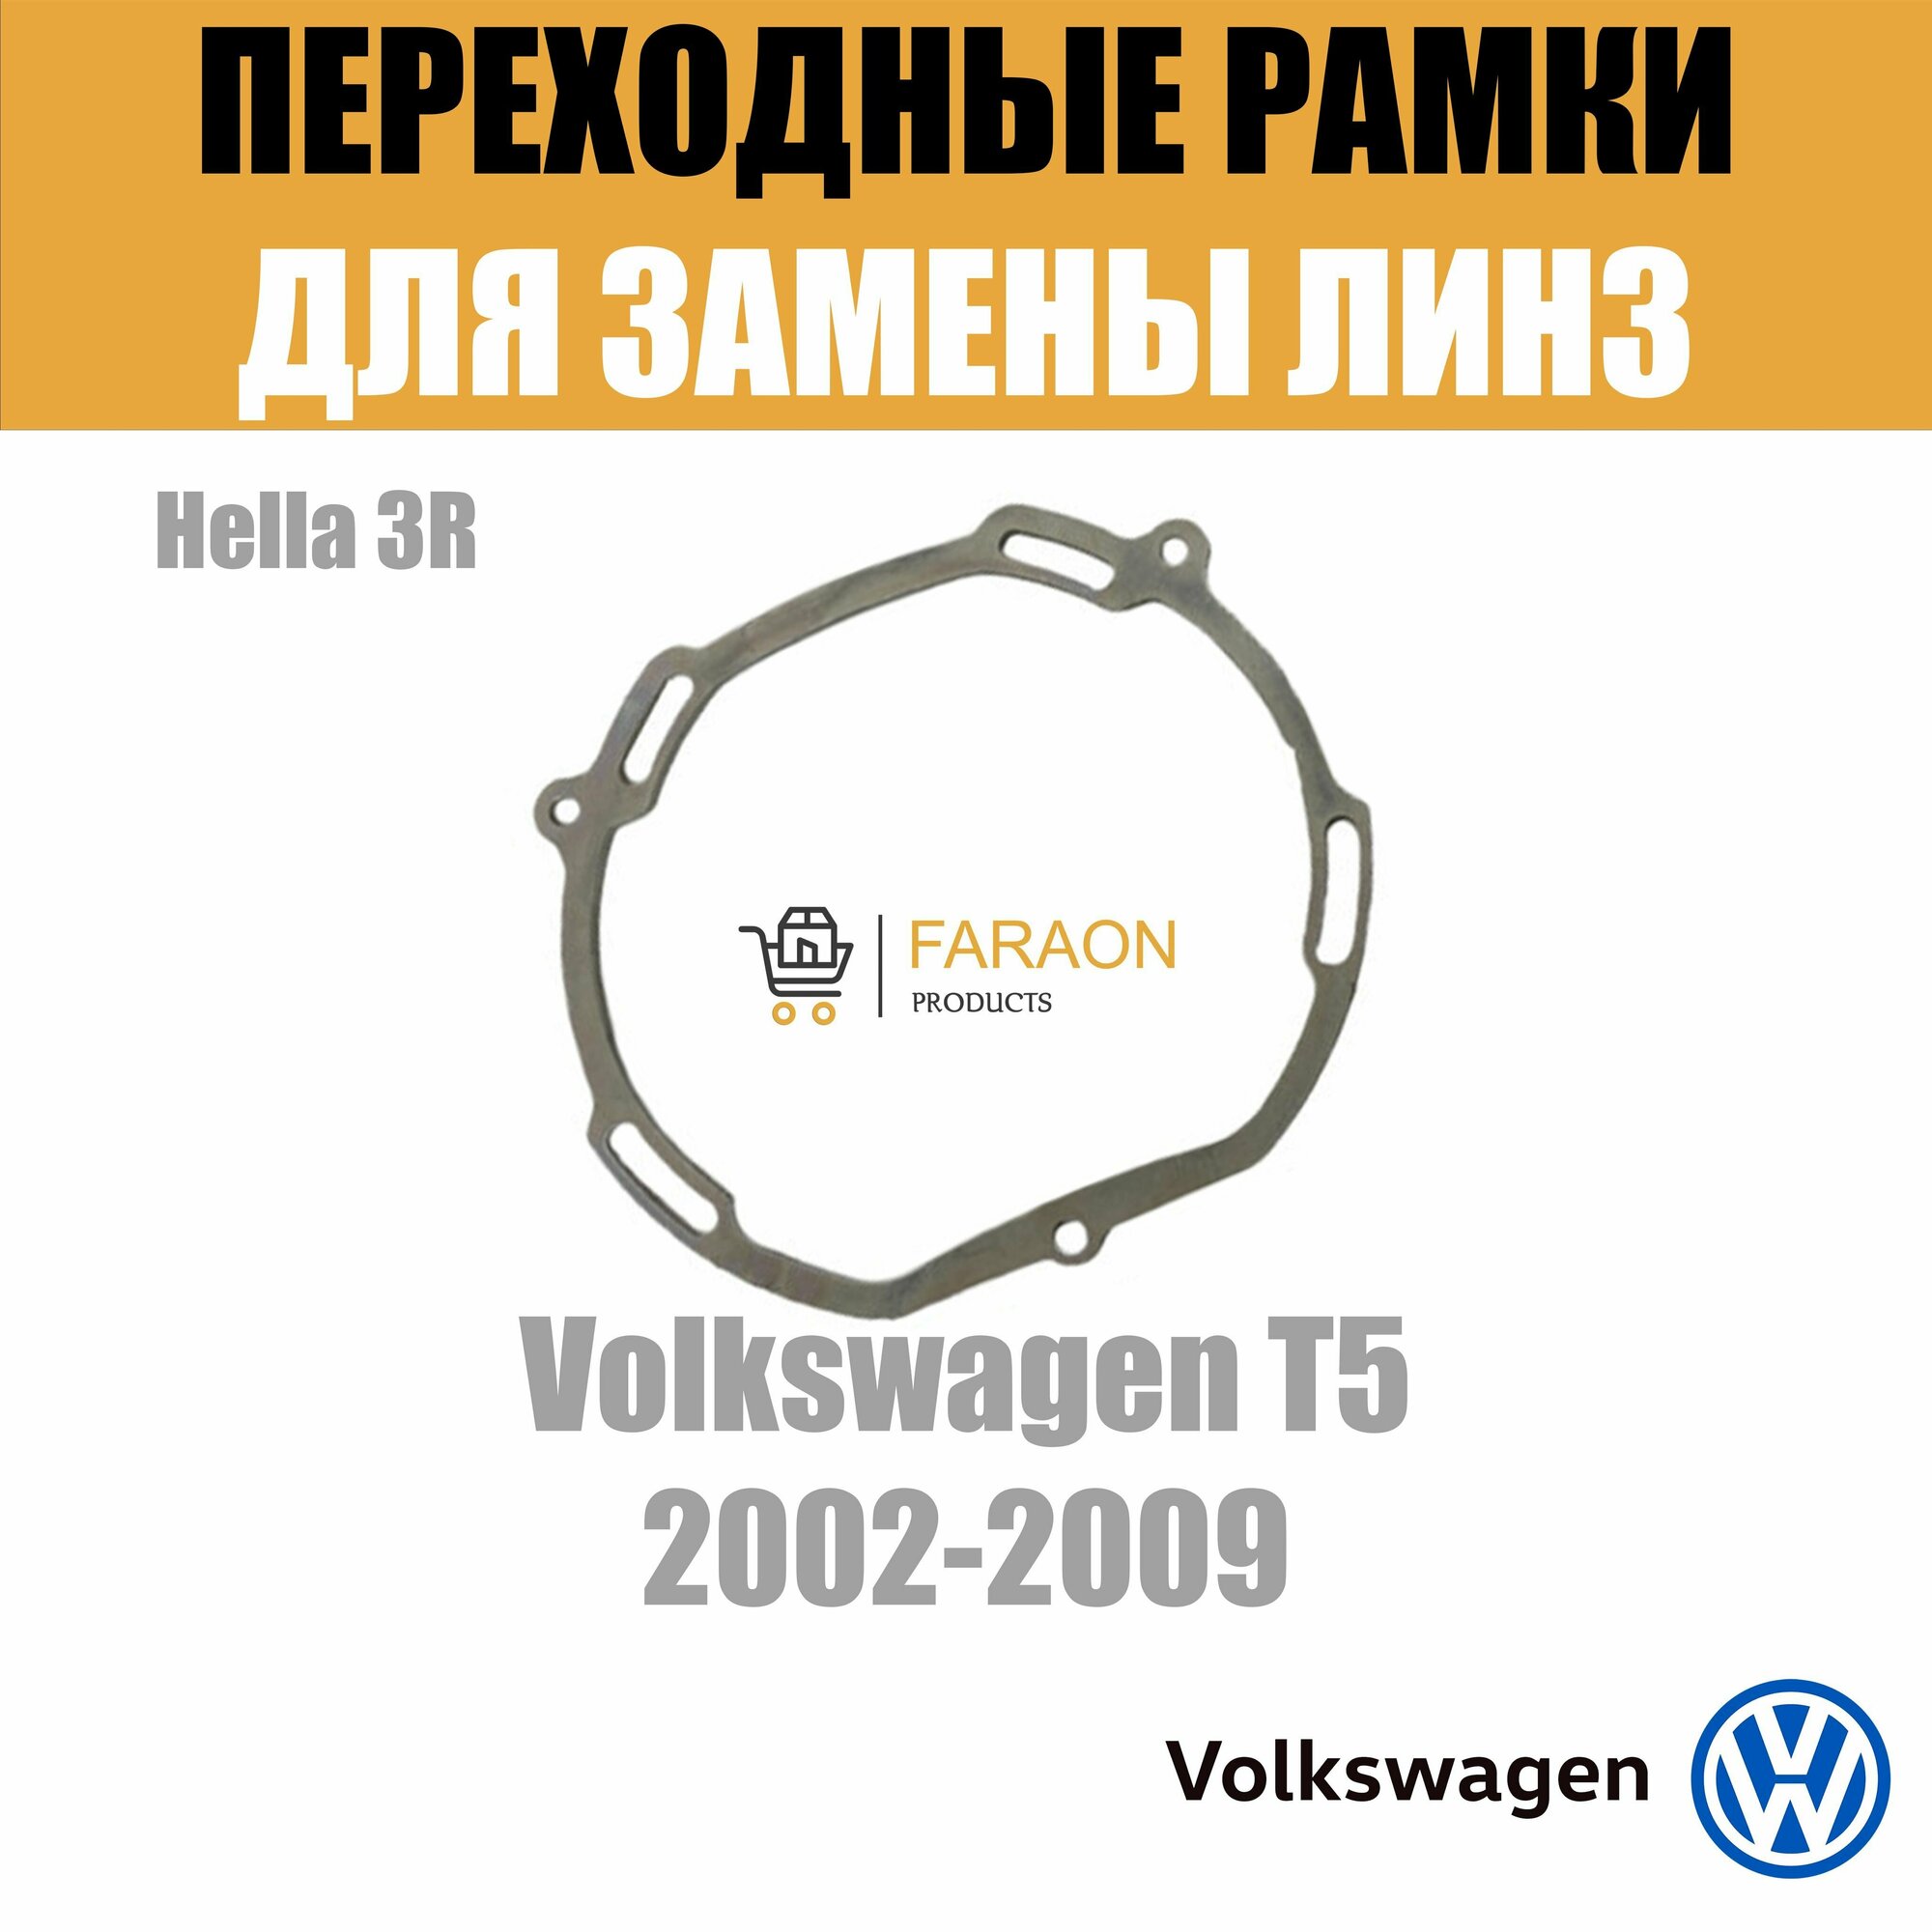 Пластины для установки линз в рефлекторные фары Volkswagen T5 2002-2009 Крепление Hella 3R